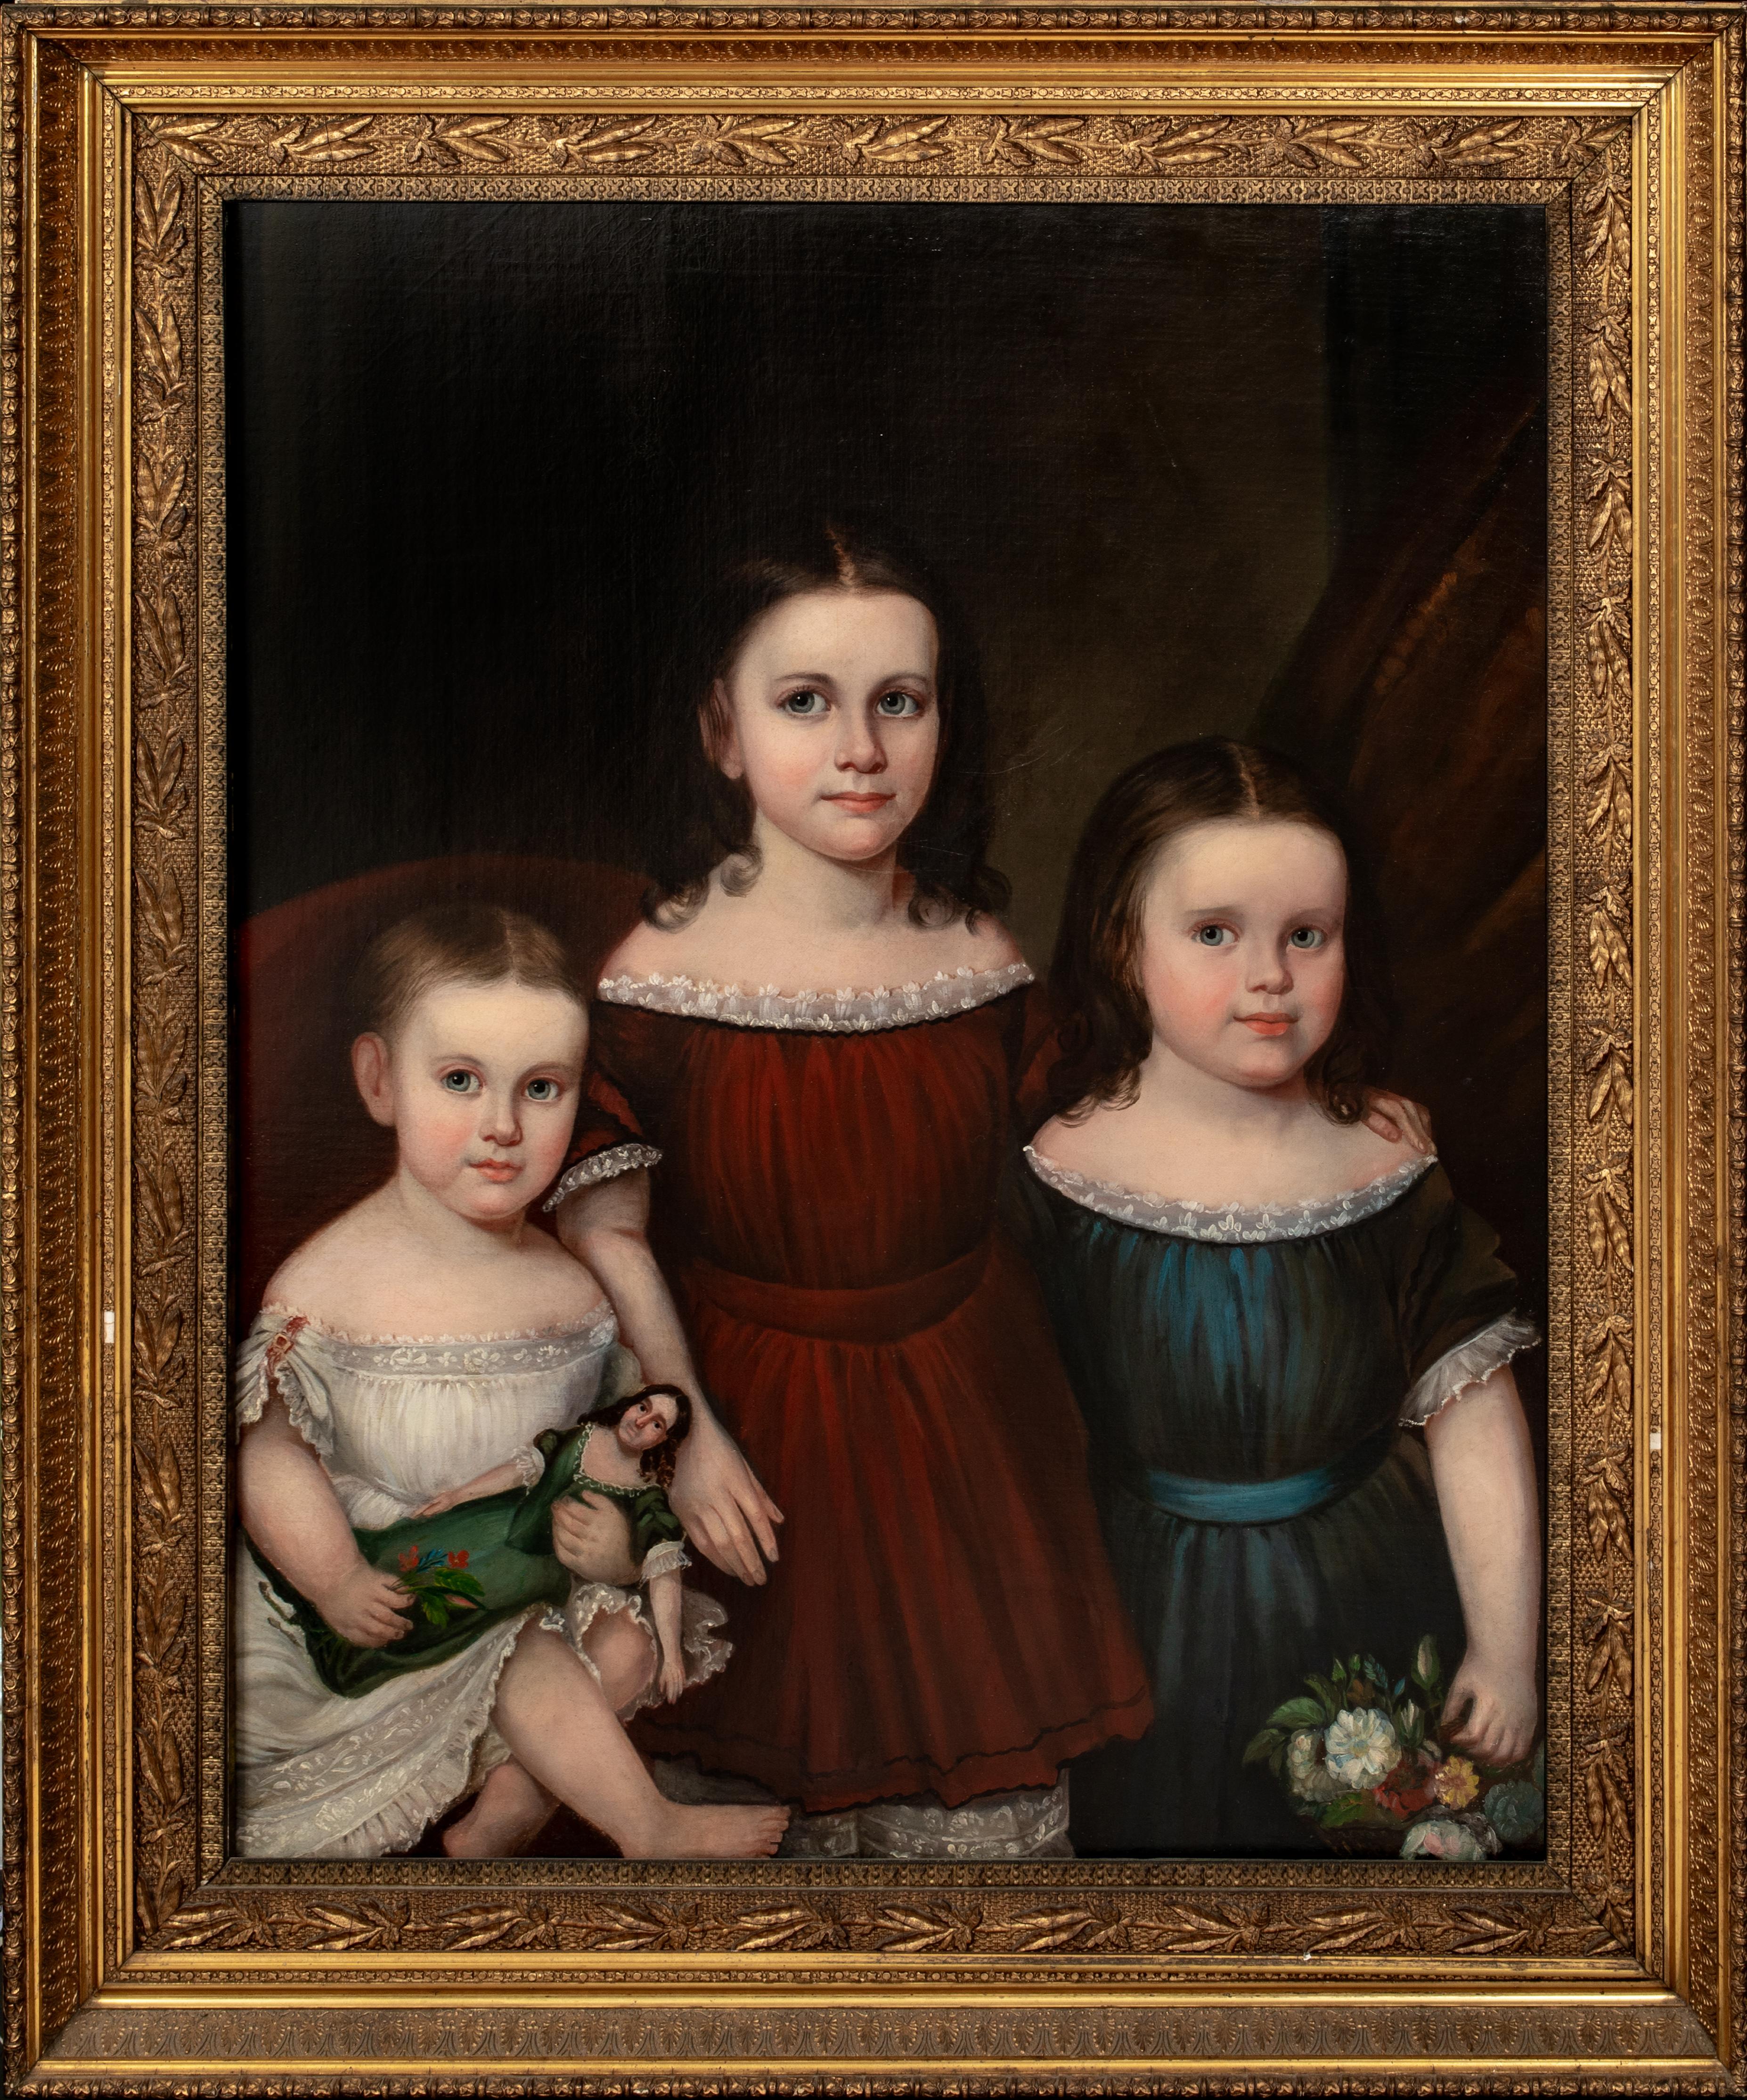 Unknown Portrait Painting - The Vanderbilt Children, 19th Century   American School 